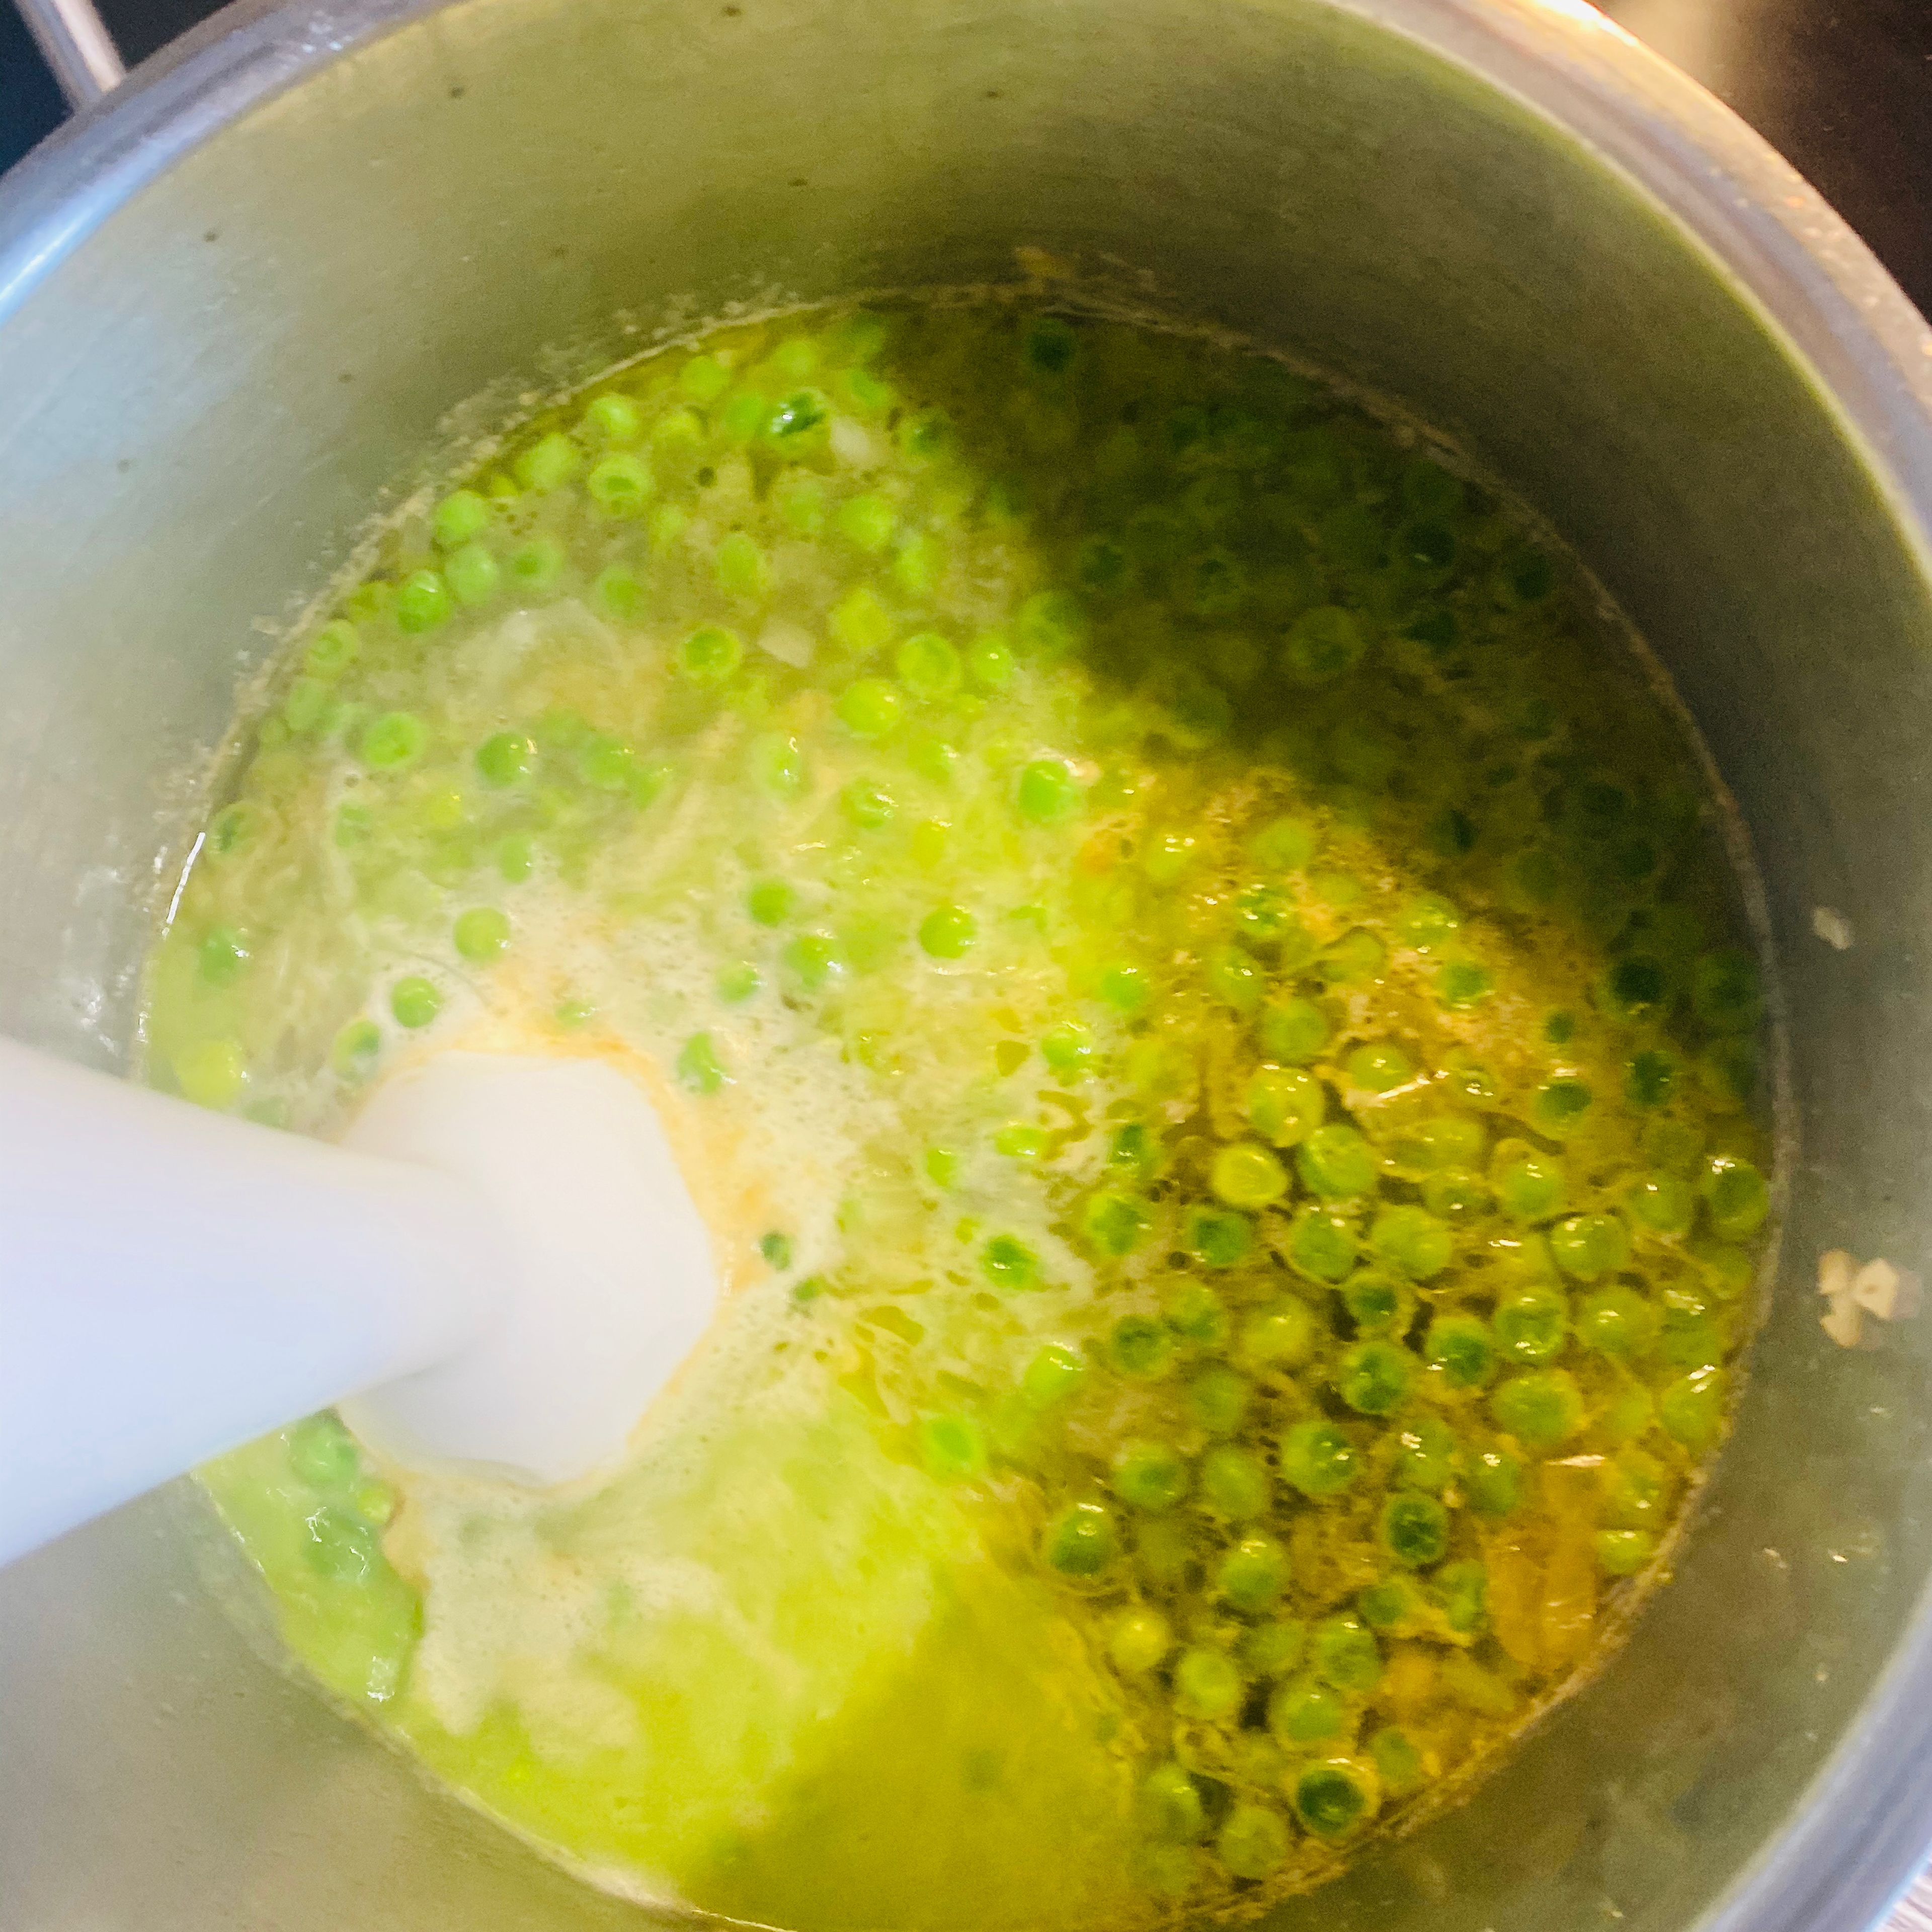 Die Suppe vom Kochfeld nehmen. Mit dem Mixstab die Erbsensuppe gut durch mixen, bis kaum noch Stücke zu sehen sind.